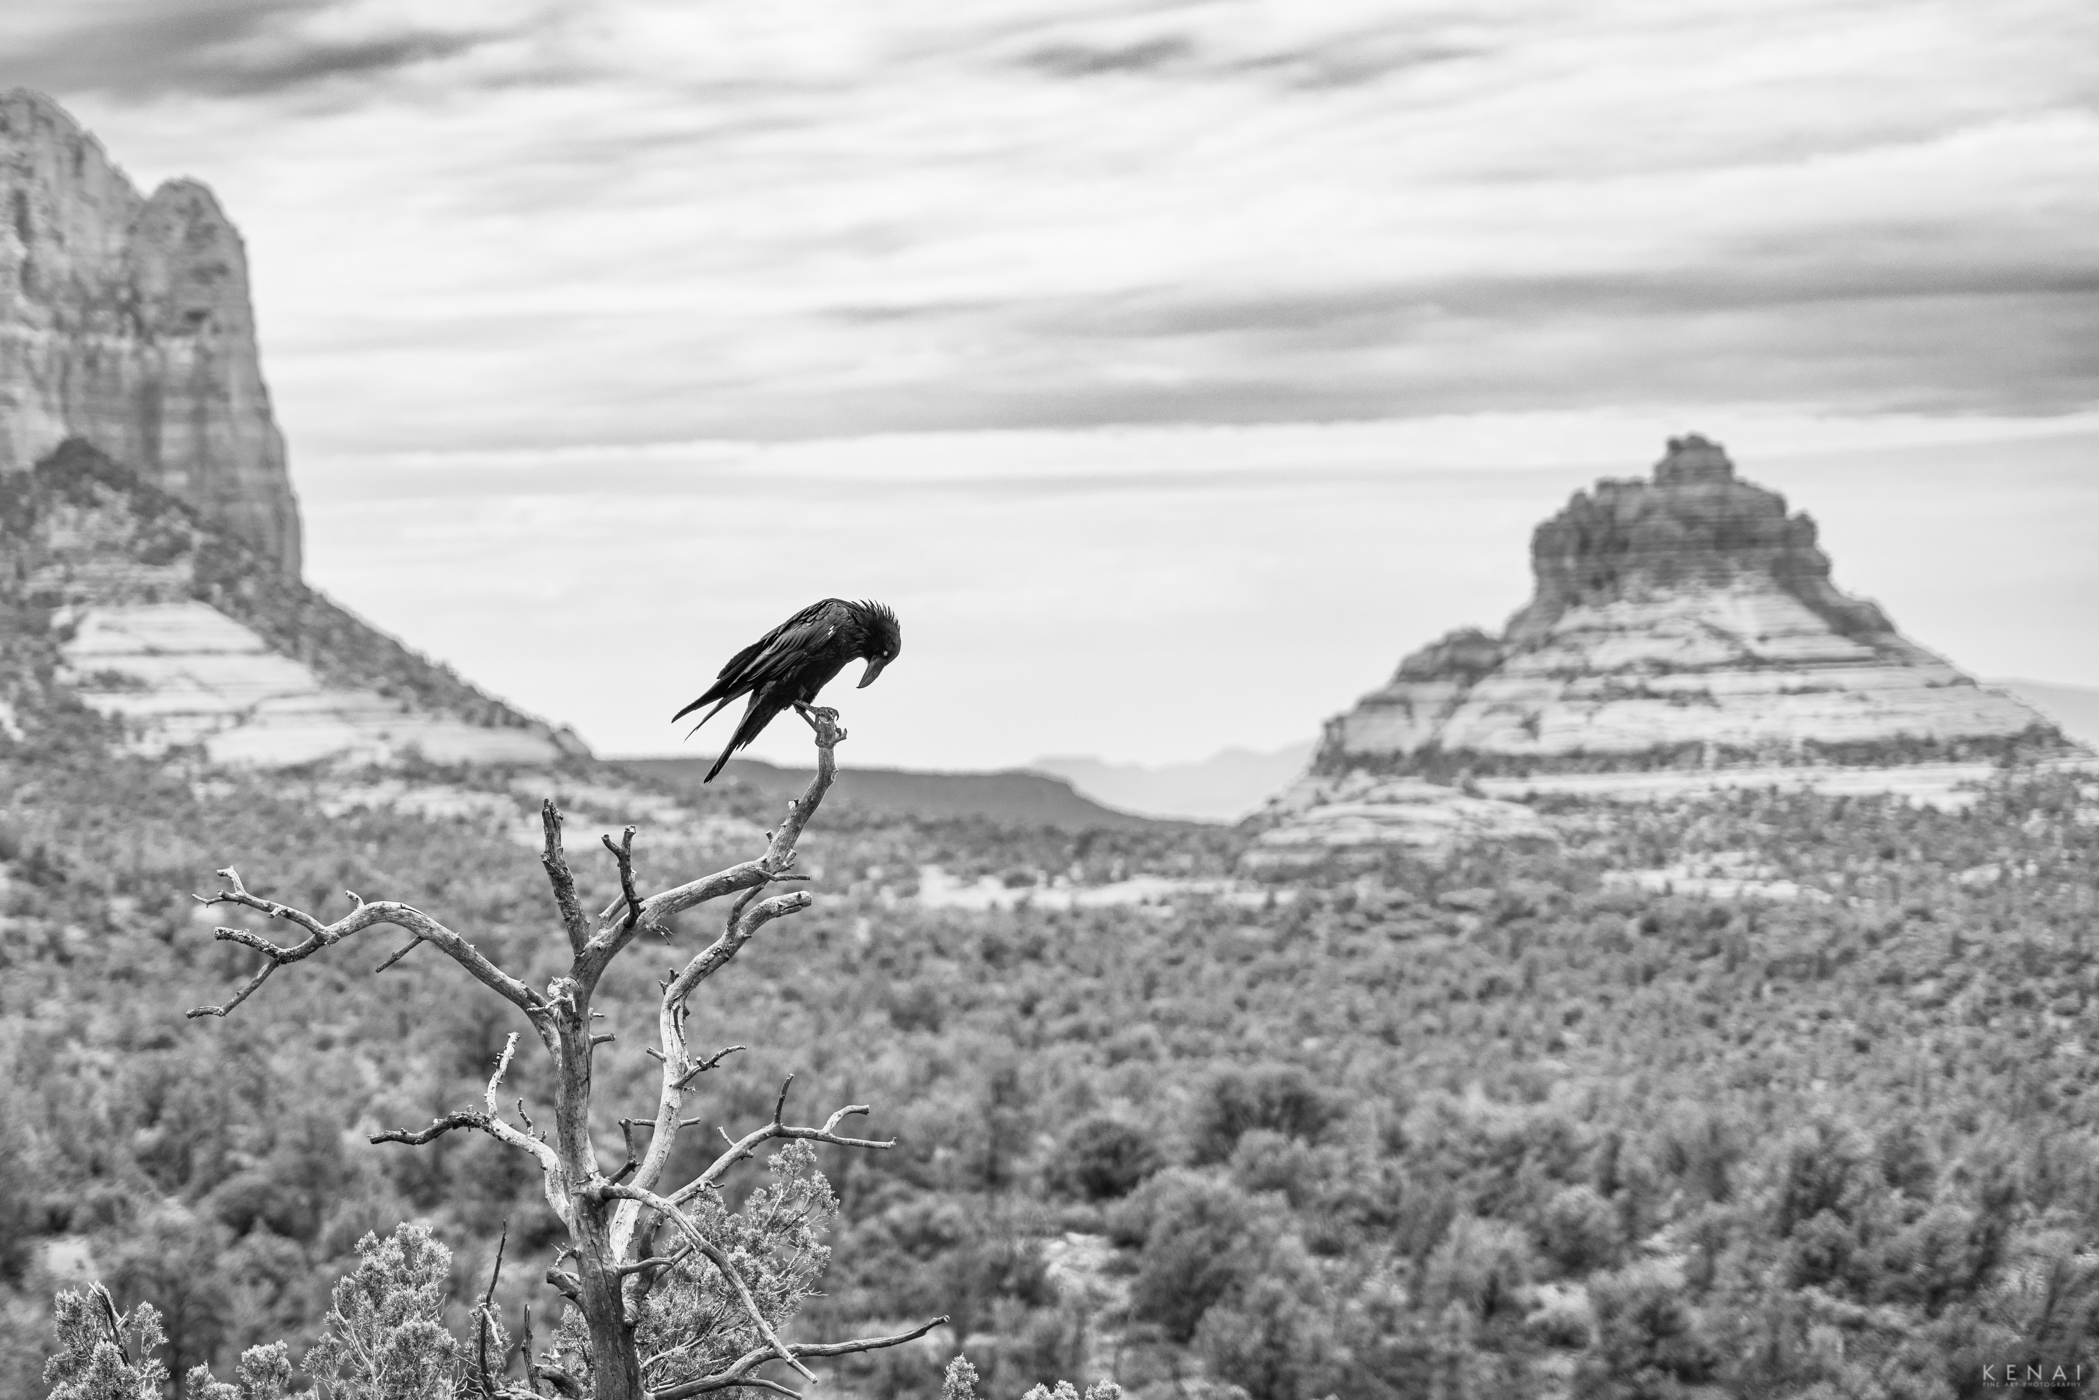 A raven perches in a dead tree near Sedona Arizona.